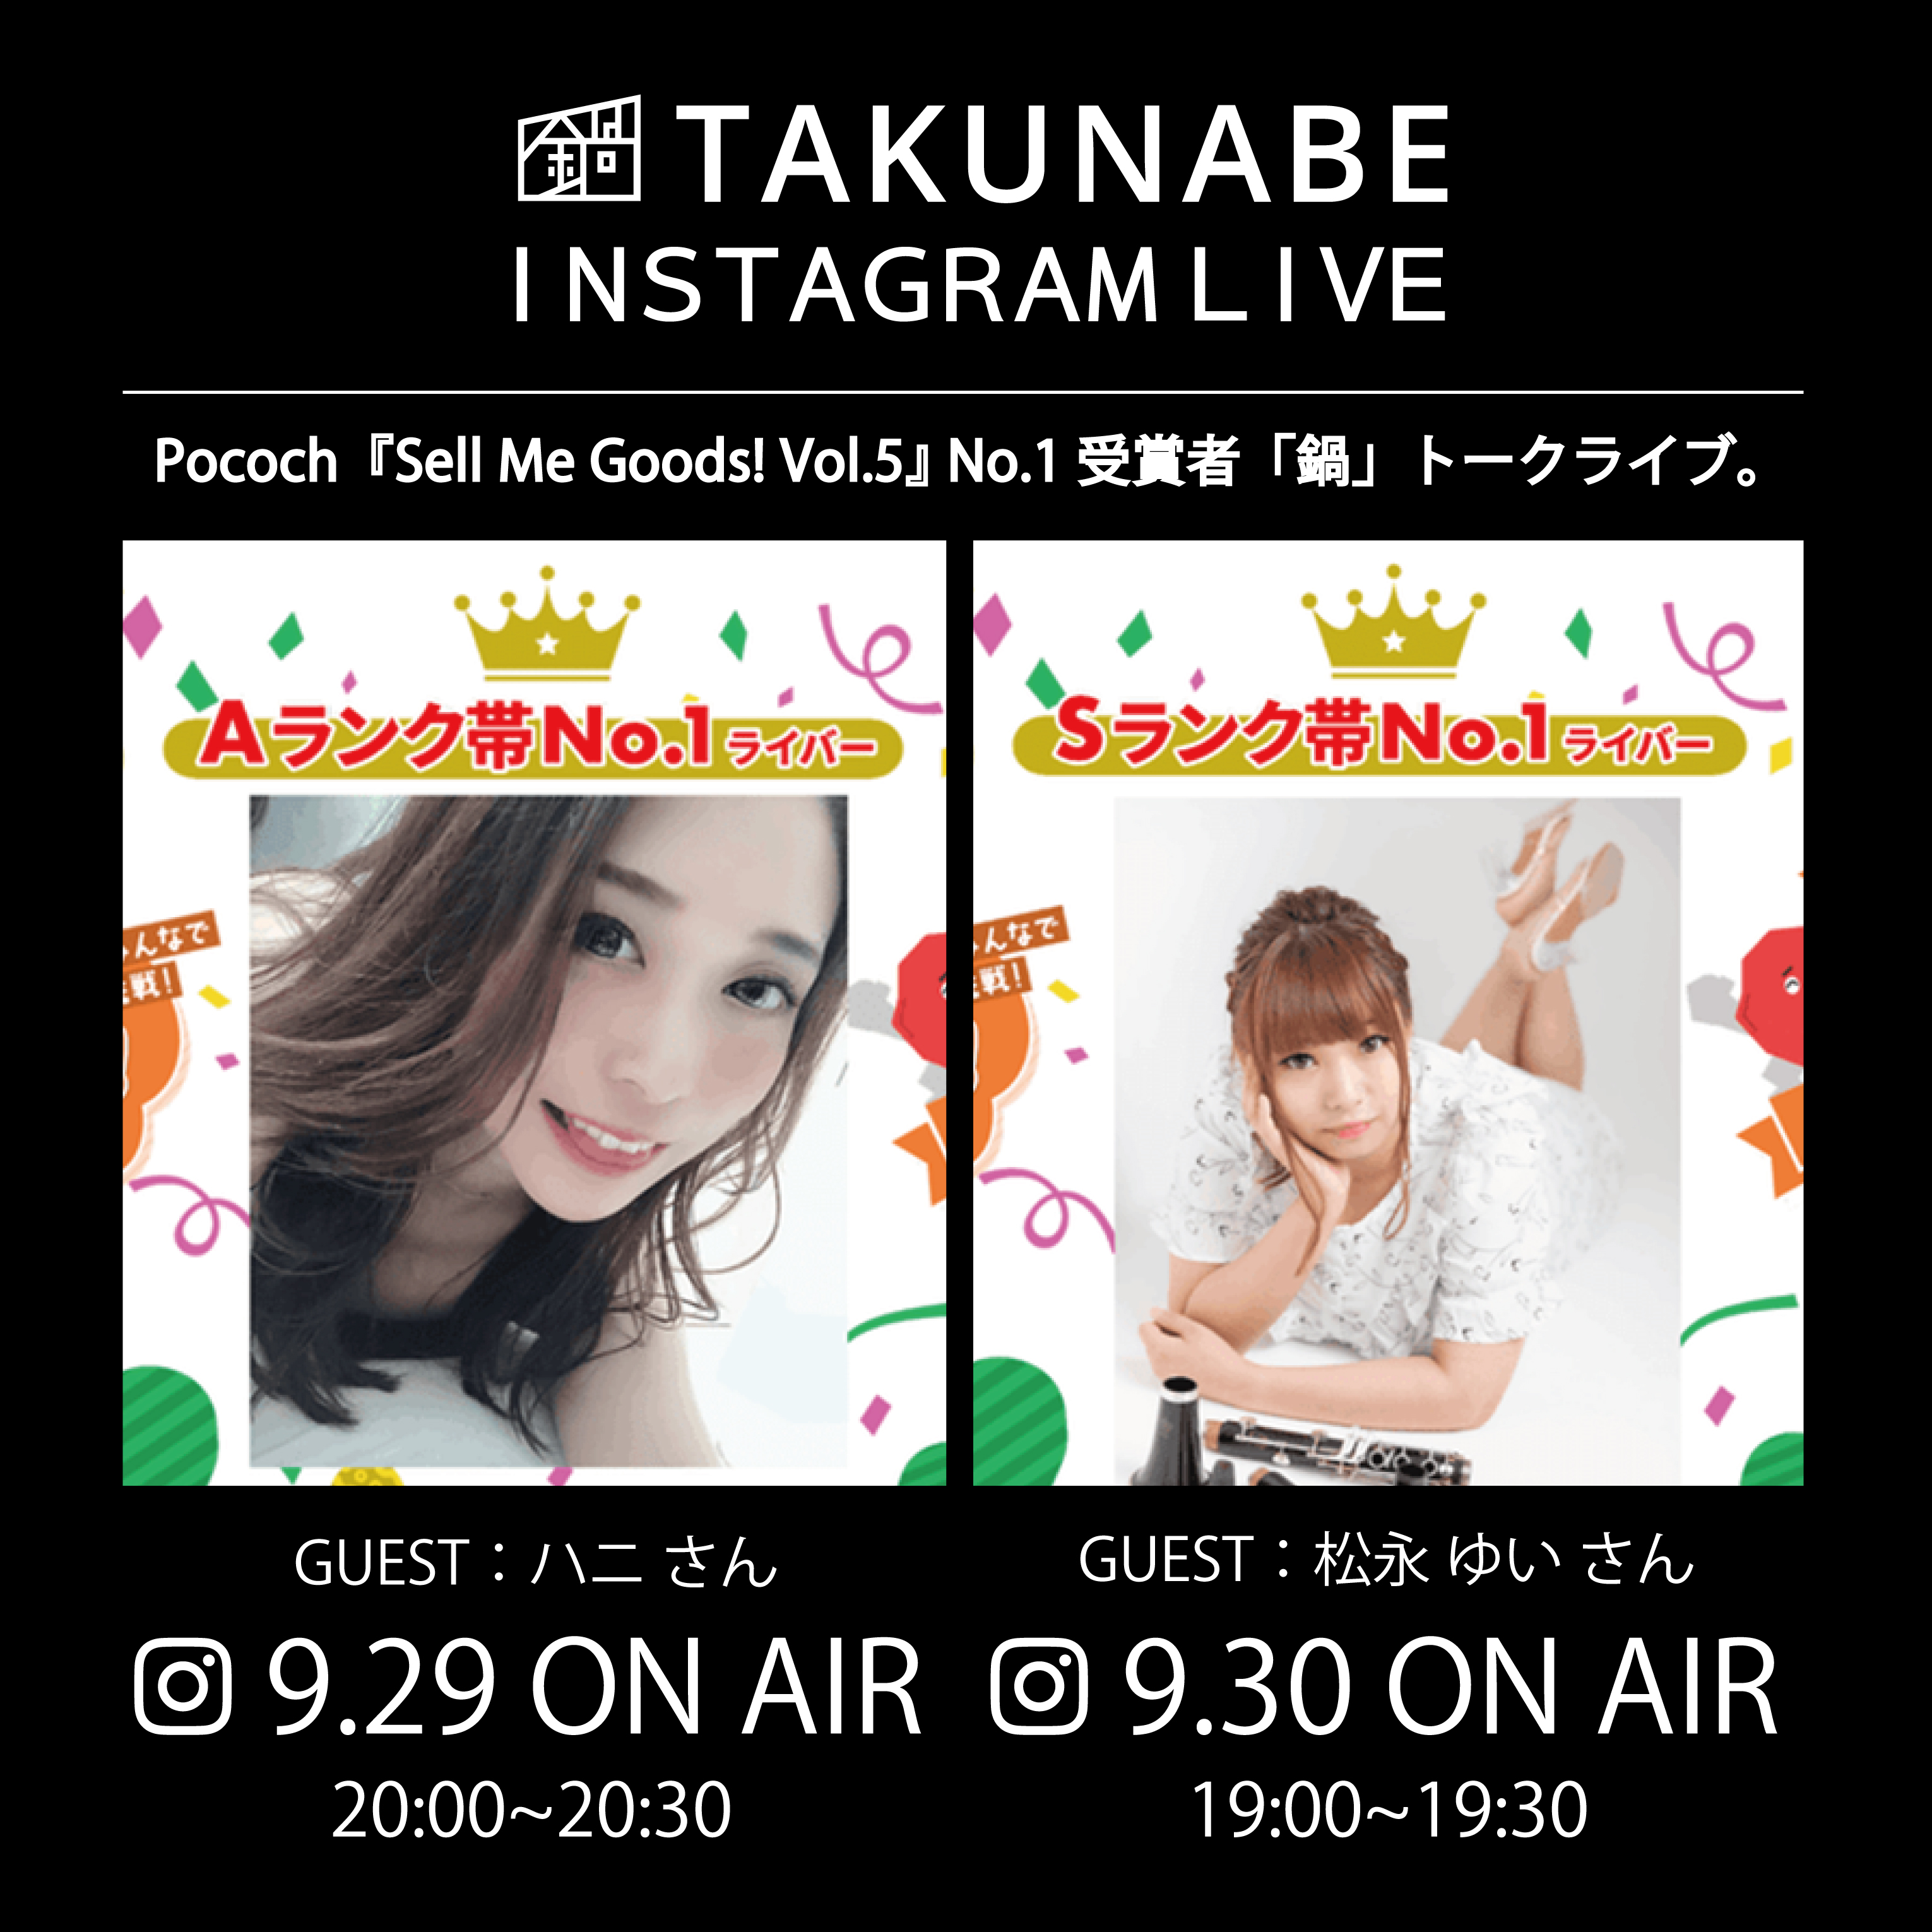 【イベント情報】DeNA pocochaライバー出演「TAKUNABE公式Instagram LIVE」2夜連続配信